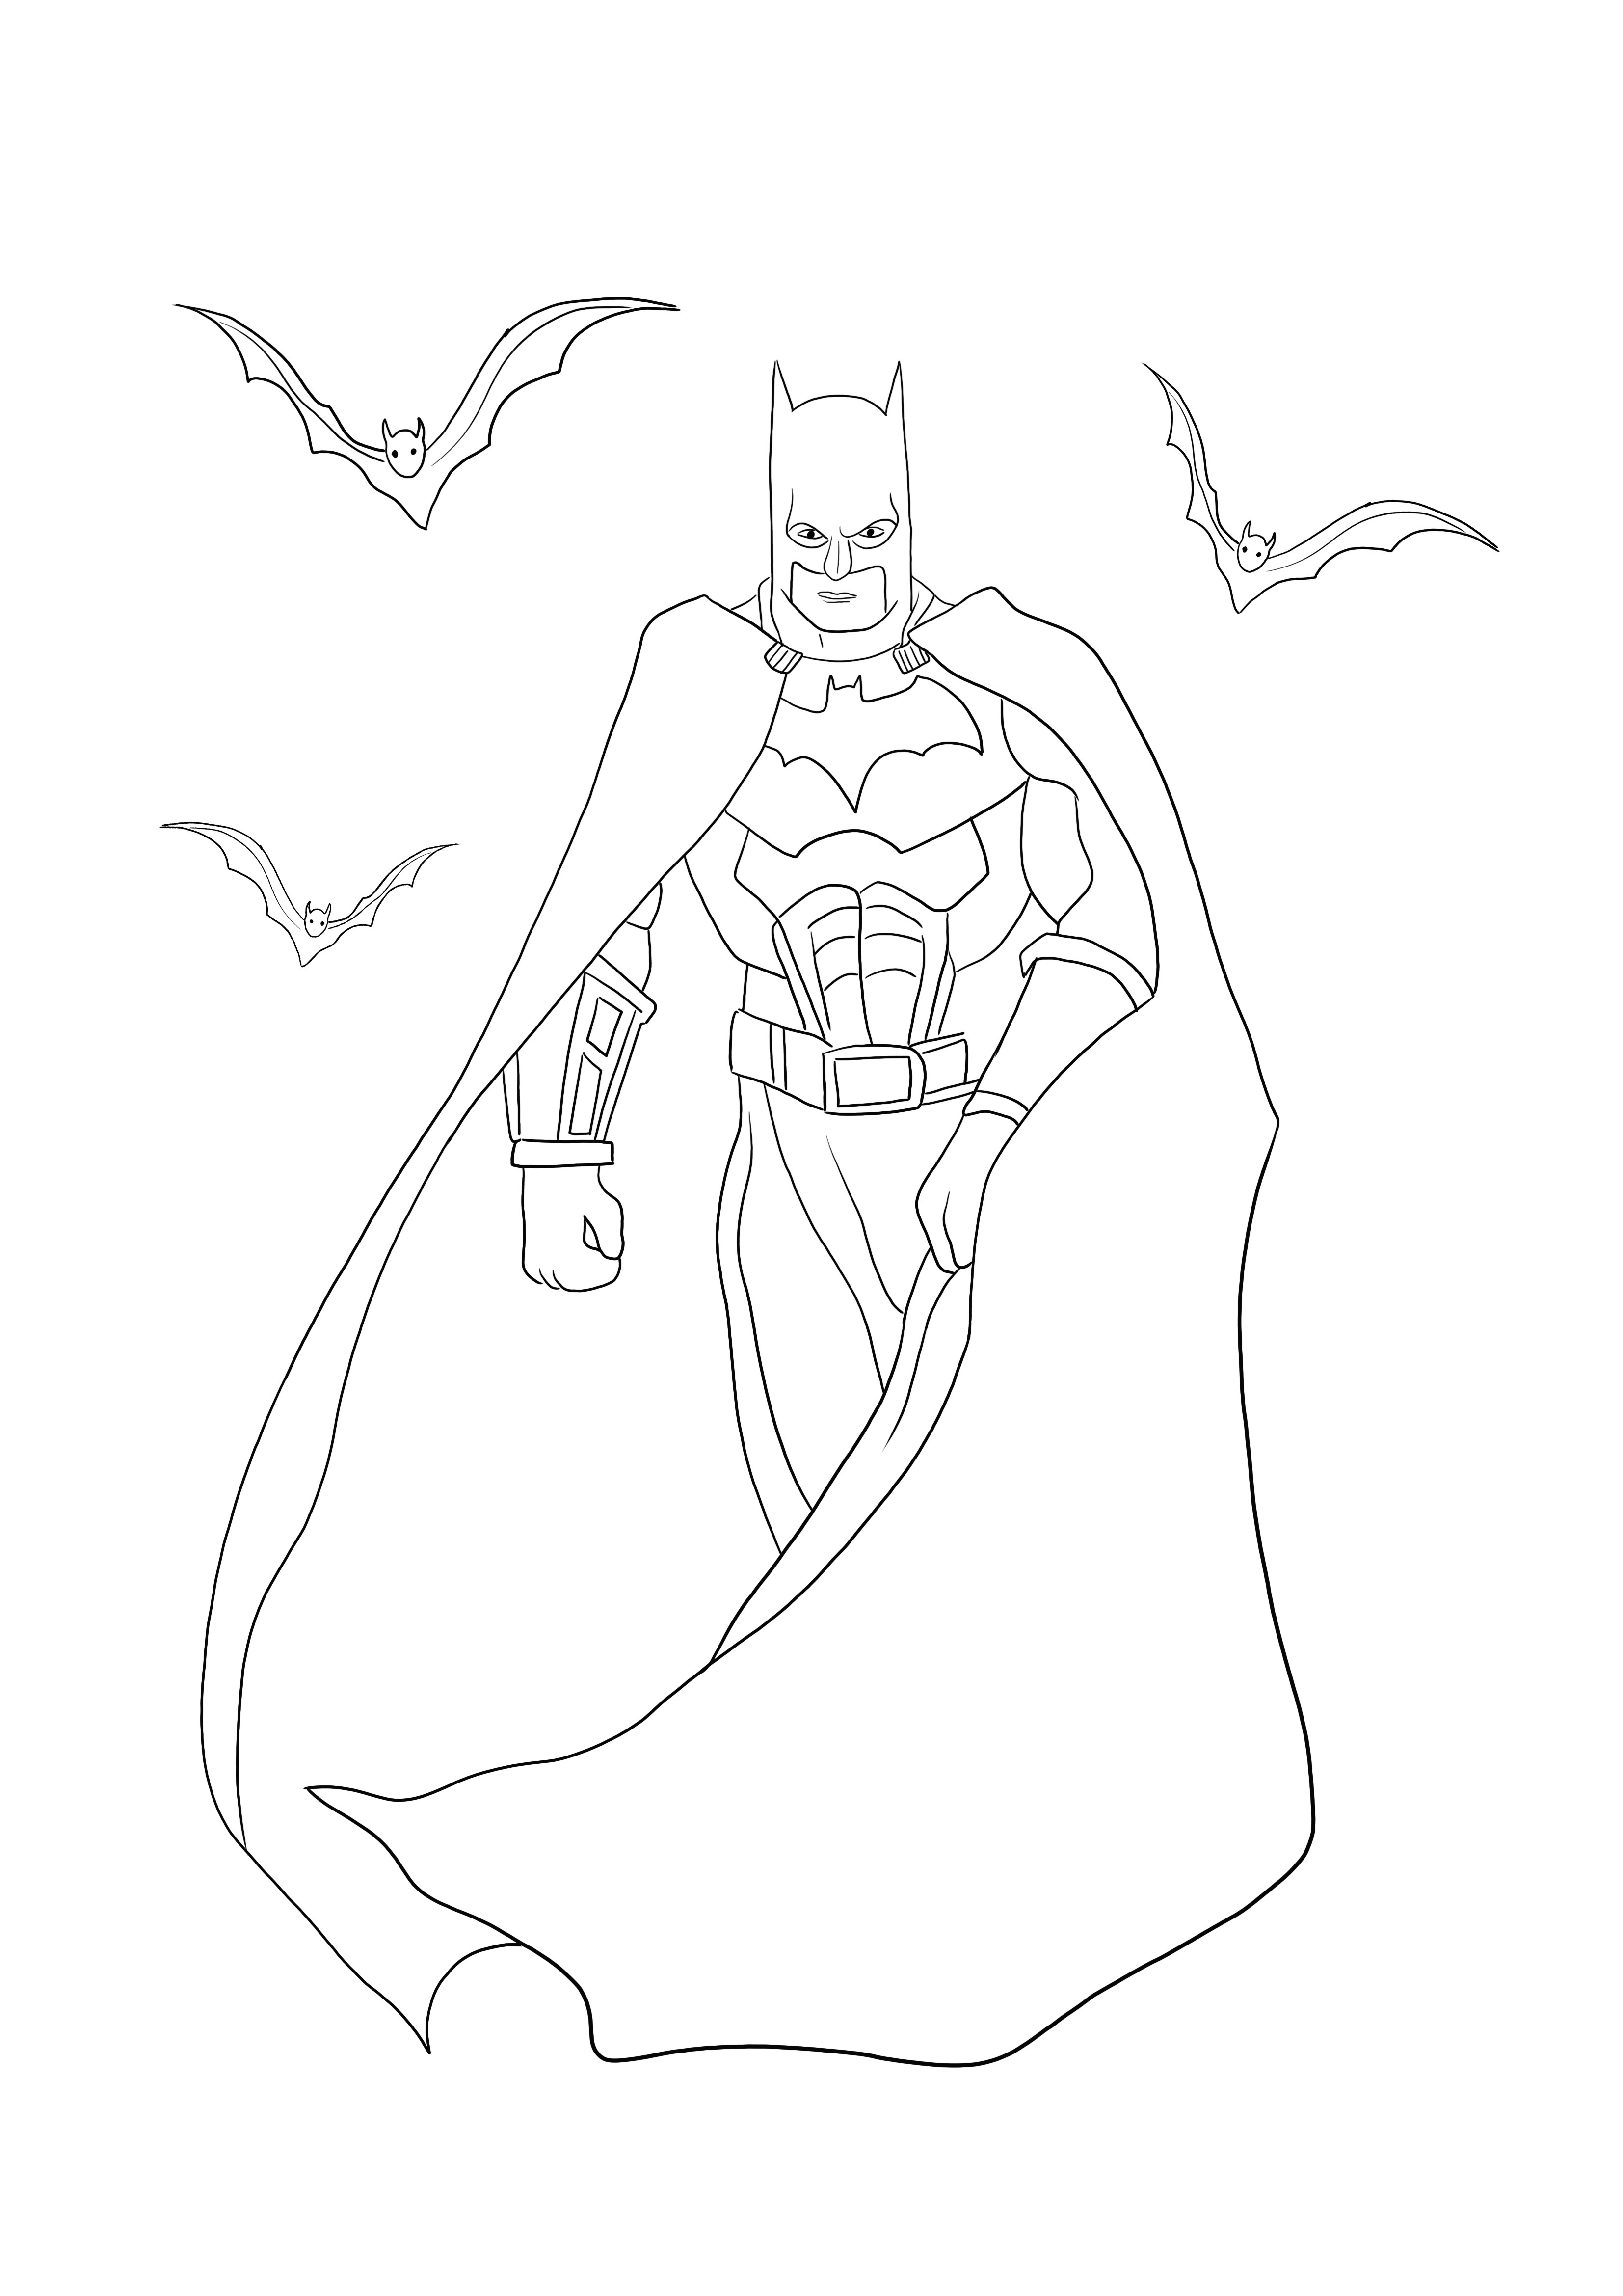 La página para colorear de Batman con murciélagos se puede descargar o imprimir gratis para divertirse